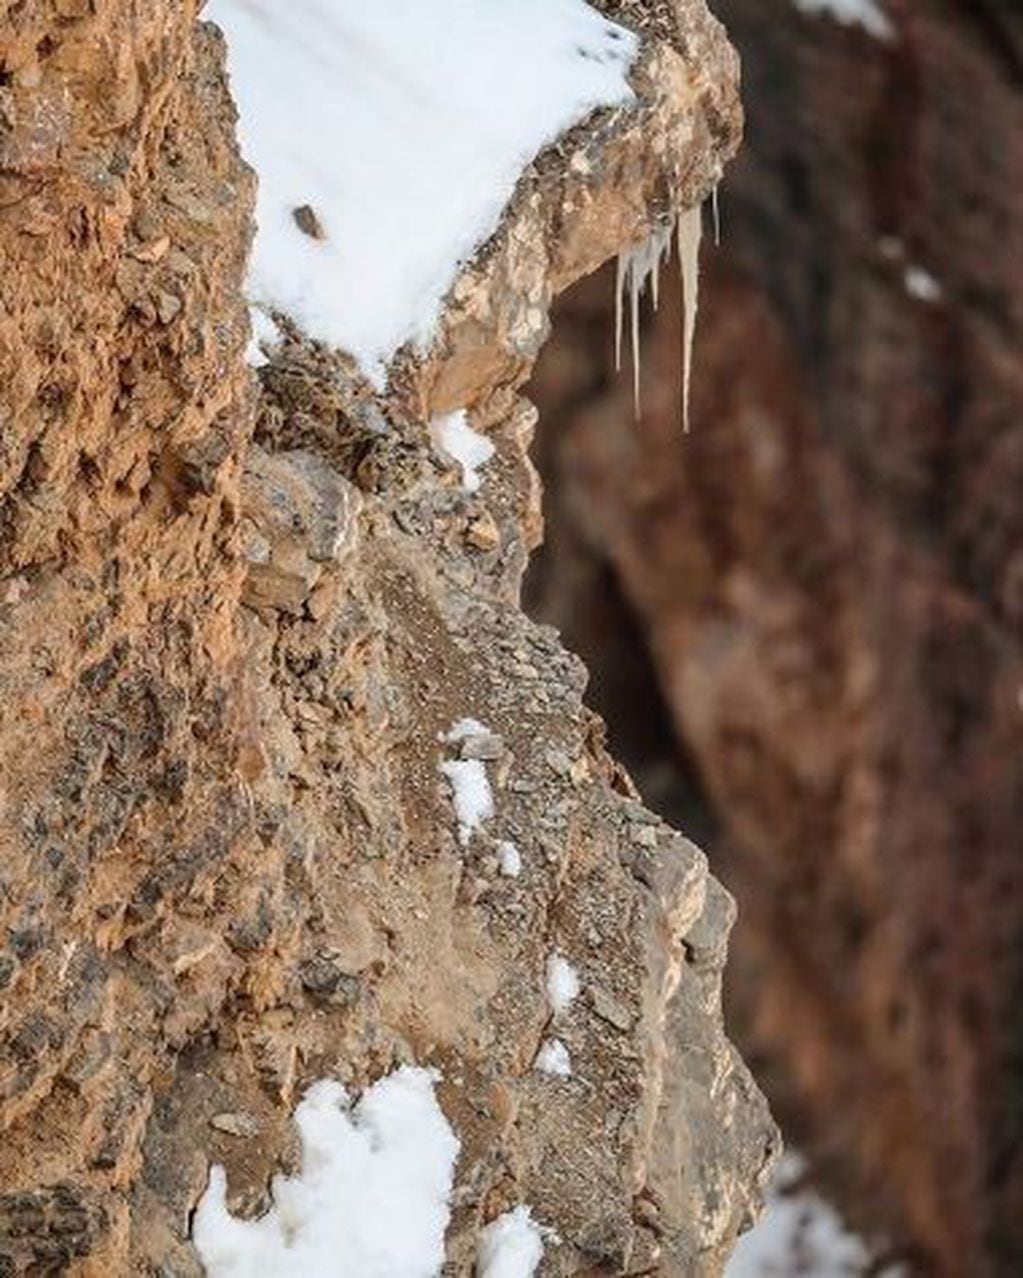 "El arte del camuflaje", escribió el fotógrafo Saurabh Desai para mostrar cómo un leopardo lograba hacerse invisible entre las rocas (Instagram: @visual_poetries)